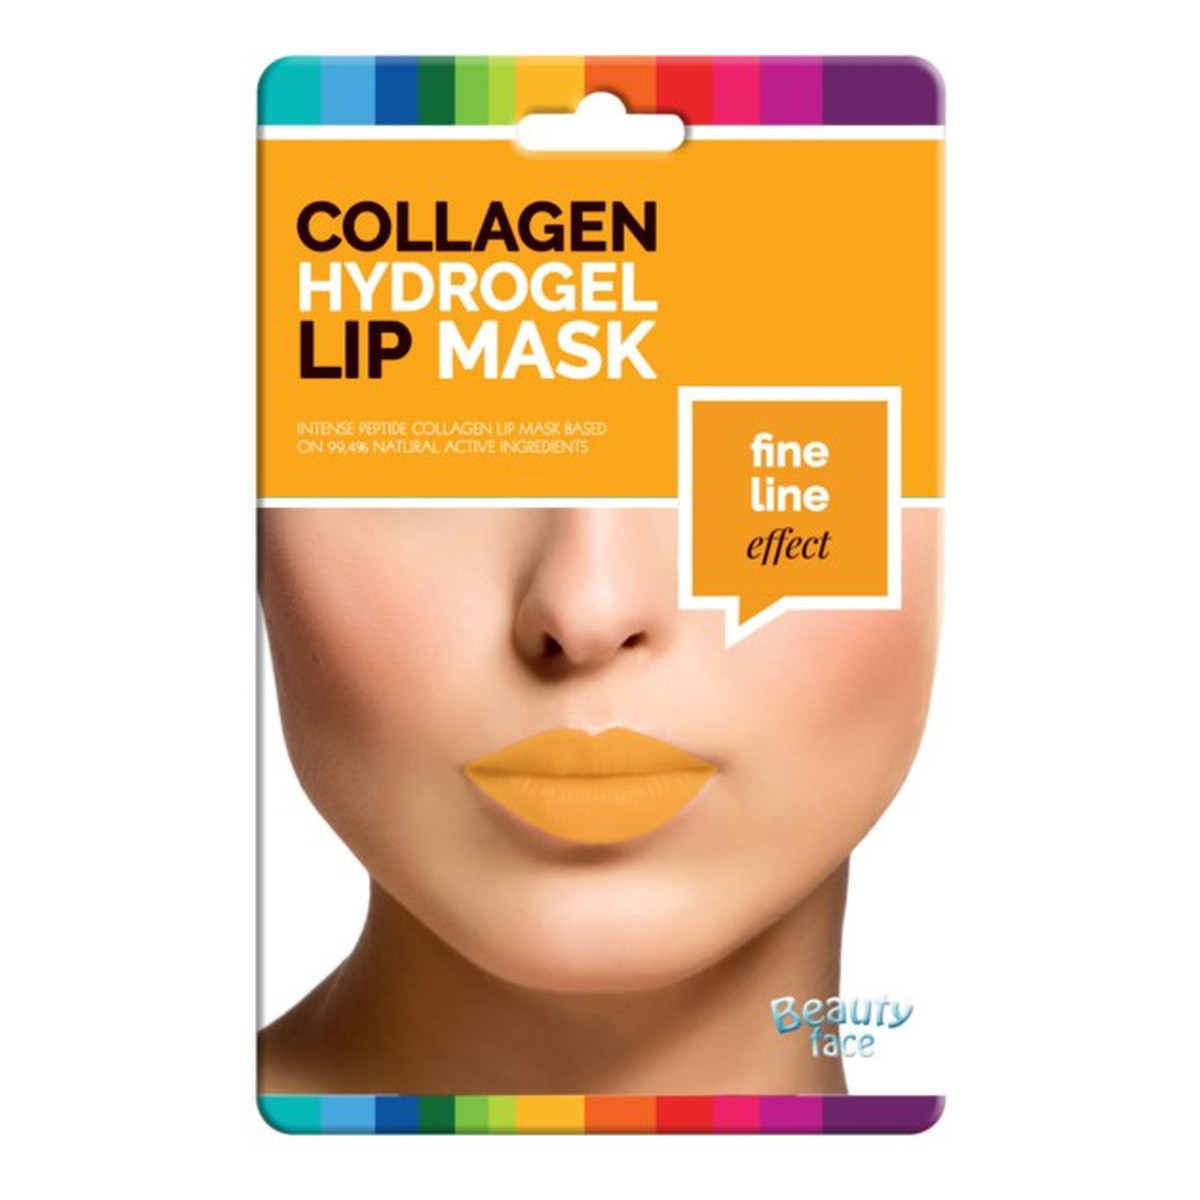 Beauty Face Collagen ujędrniająca maska kolagenowa na usta ze złotem w płacie hydrożelowym